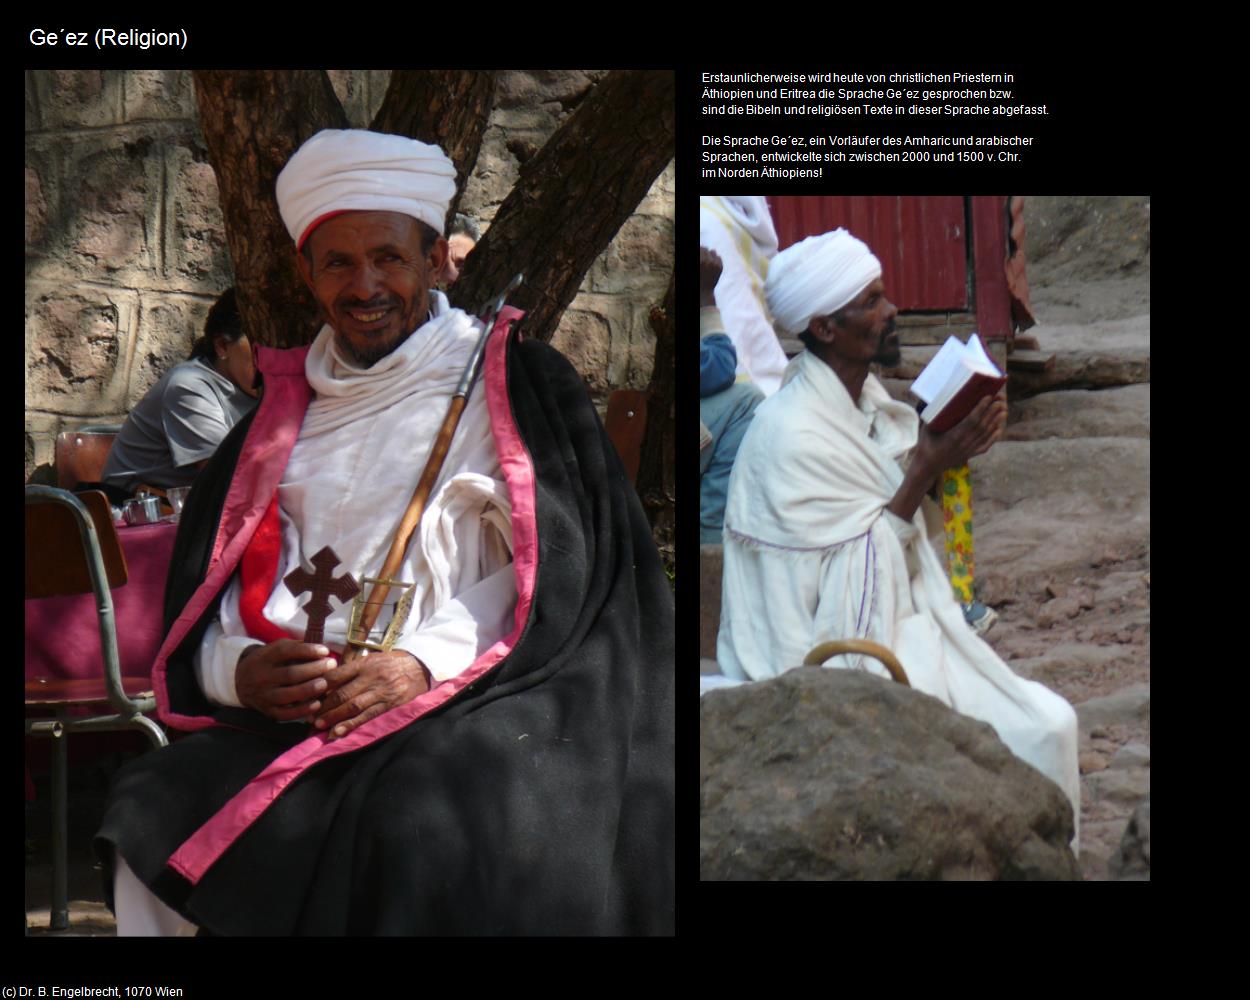 Geez (+Religion) in Äthiopien